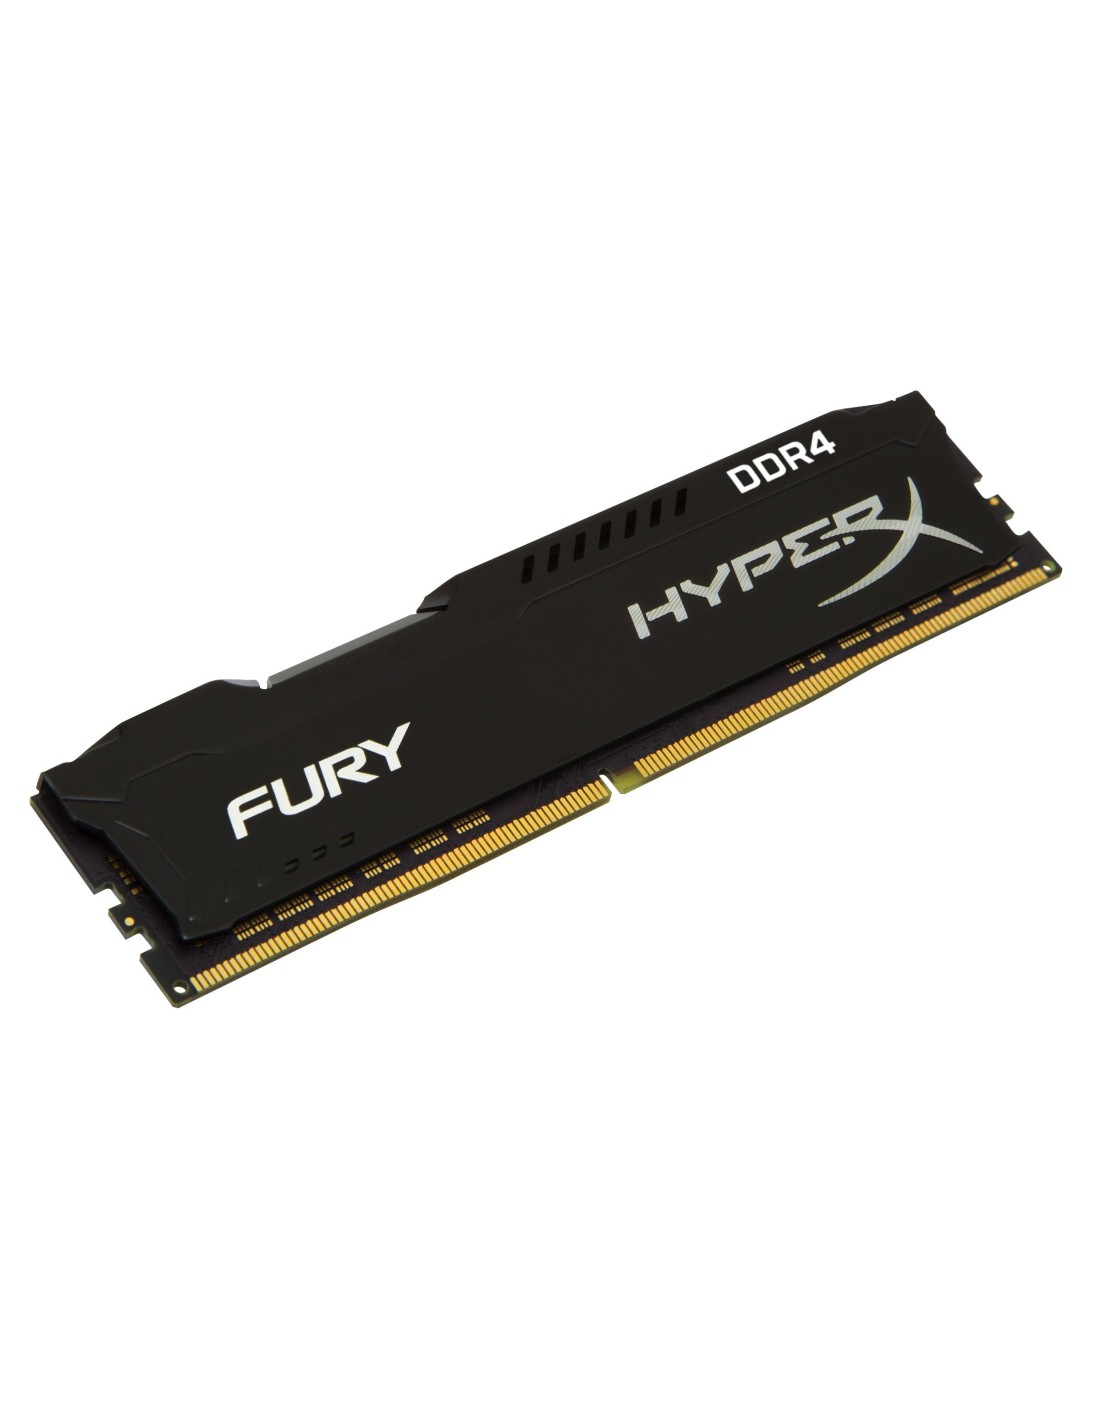 satisfacción Huracán lago Titicaca HyperX FURY Black 16GB DDR4 2400MHz módulo de memoria 1 x 16 GB